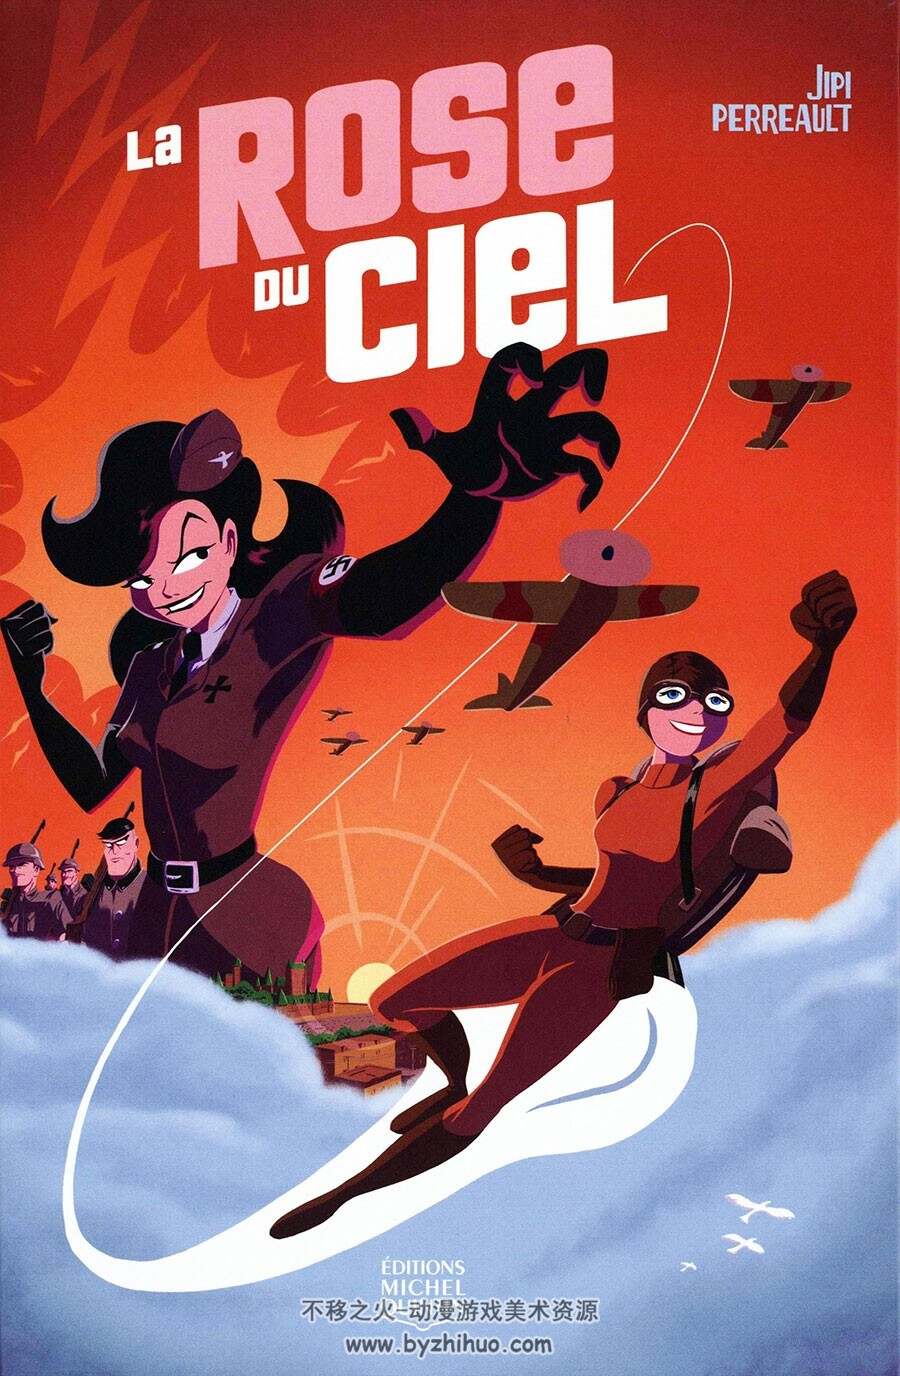 La Rose du ciel 第1册 Jipi Perreault 法语卡通彩色欧美科幻漫画